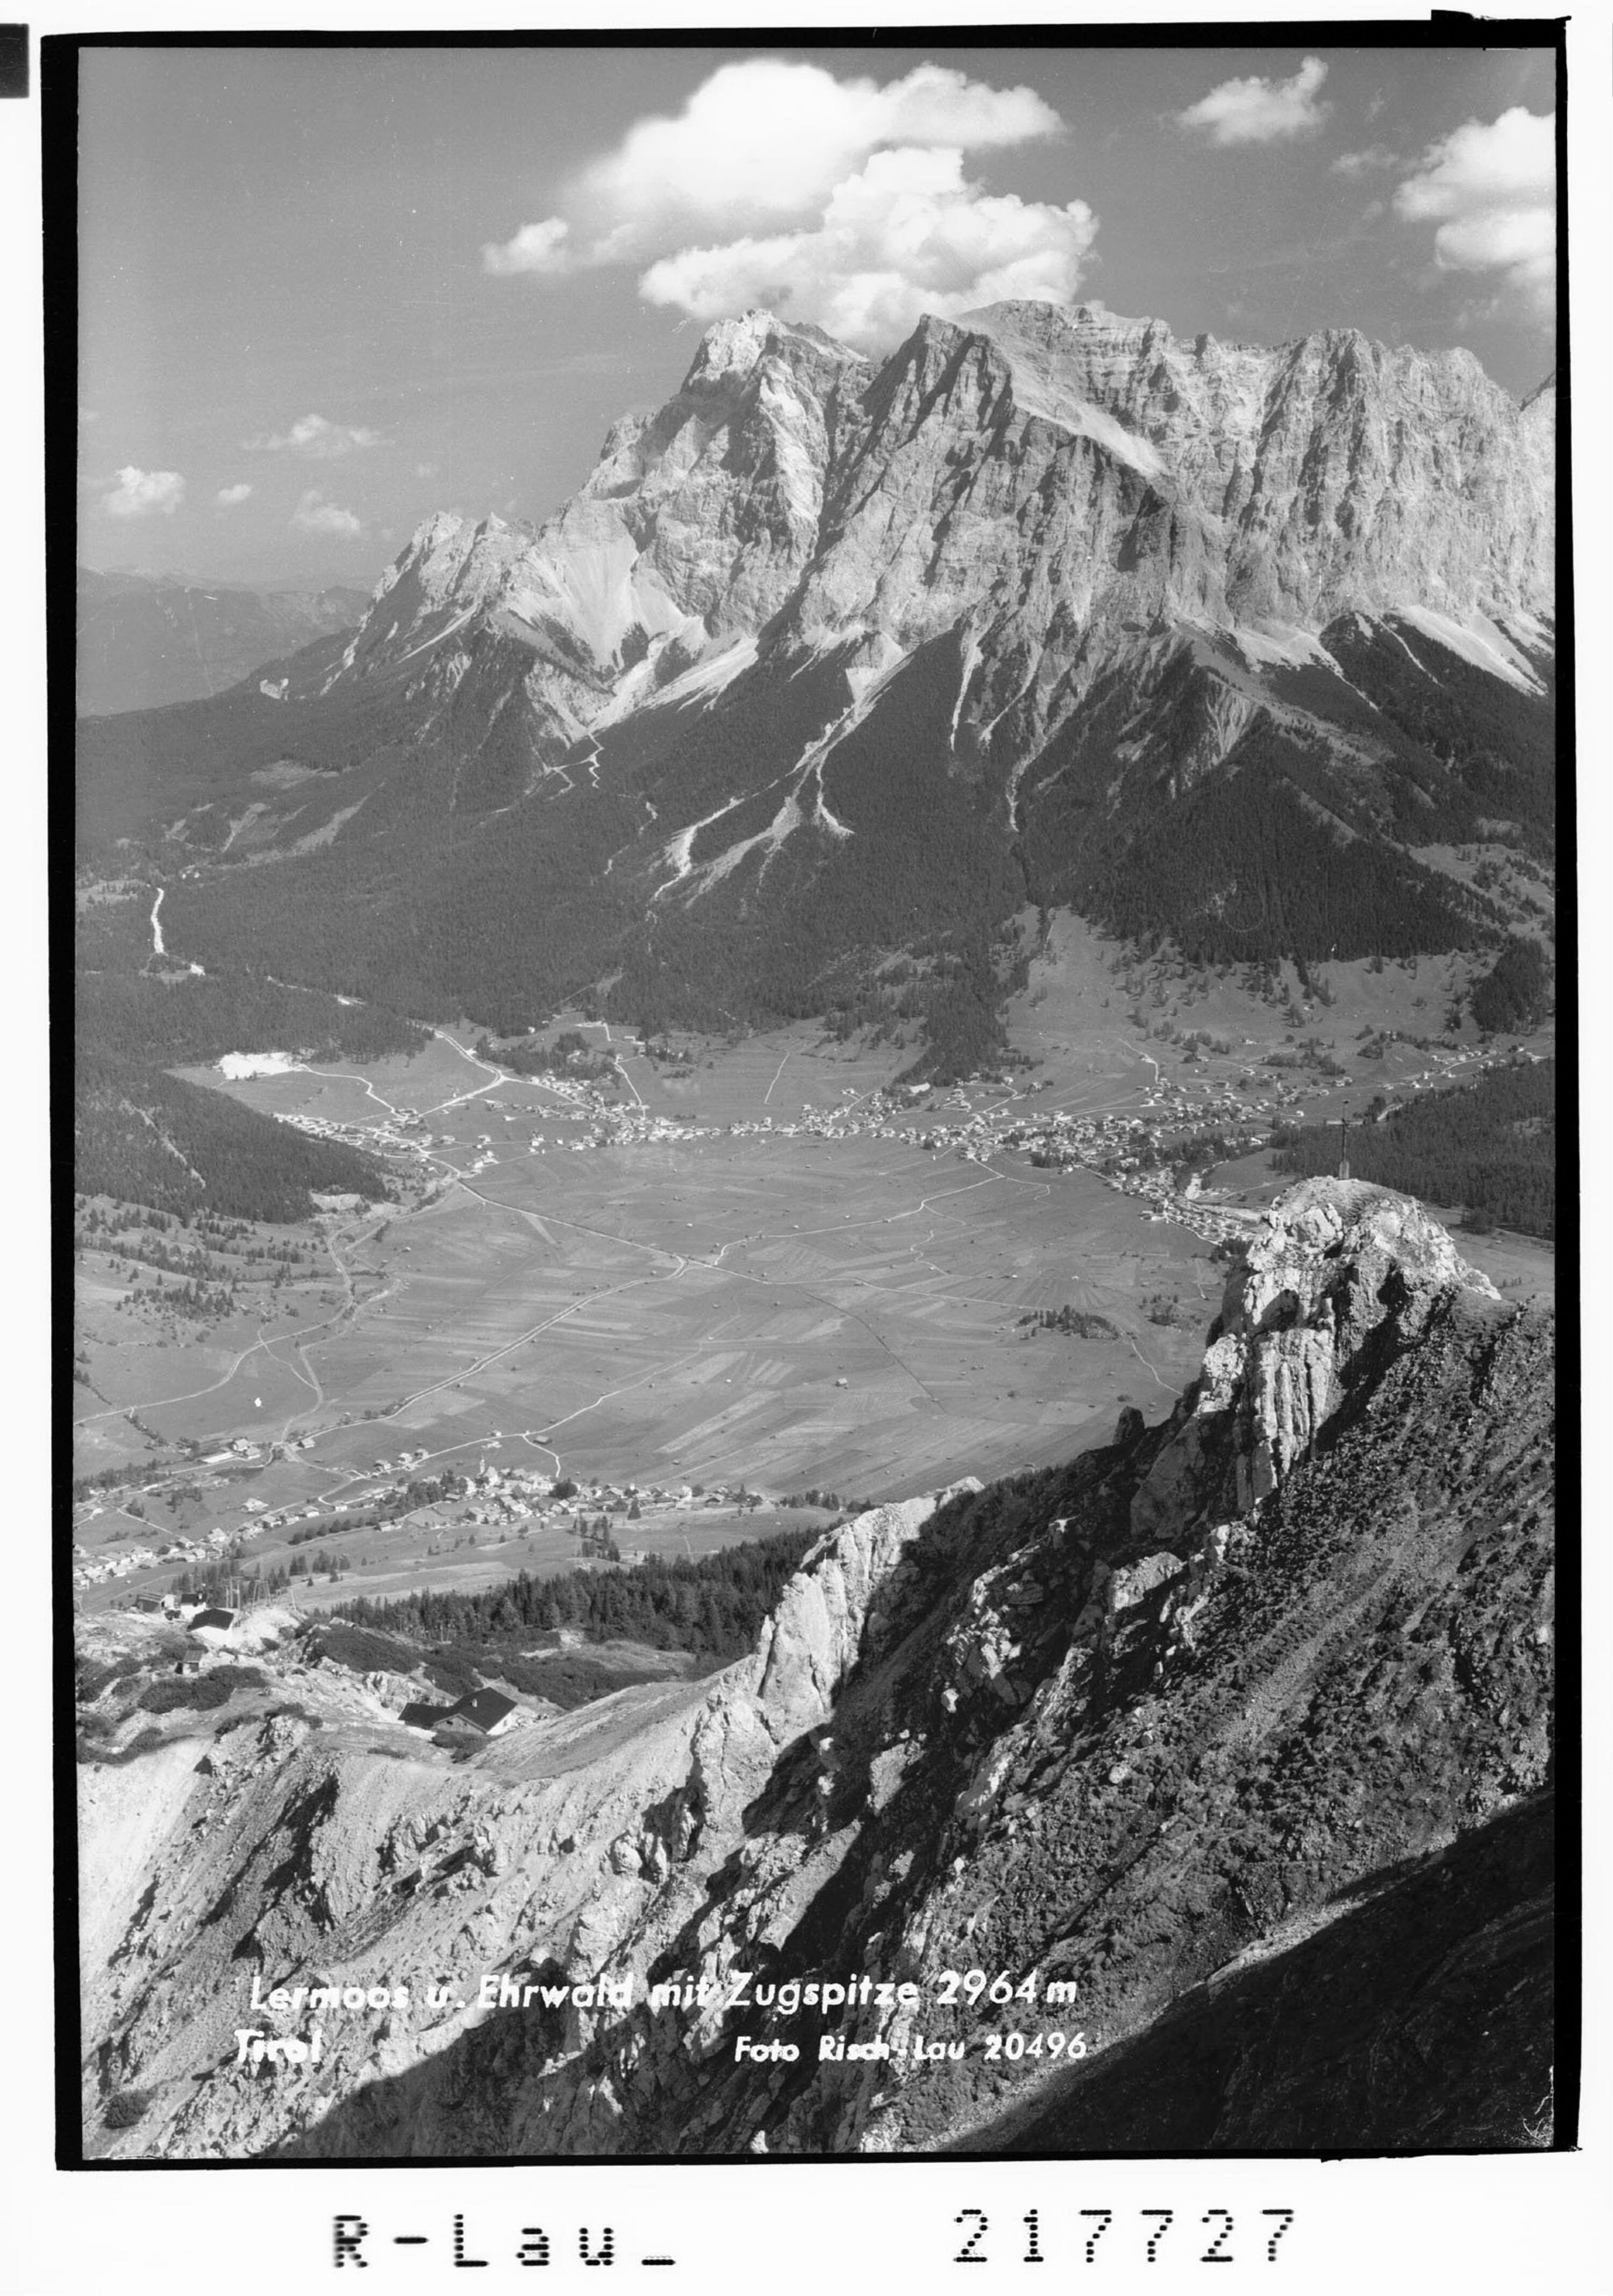 Lermoos und Ehrwald mit Zugspitze 2964 m / Tirol></div>


    <hr>
    <div class=